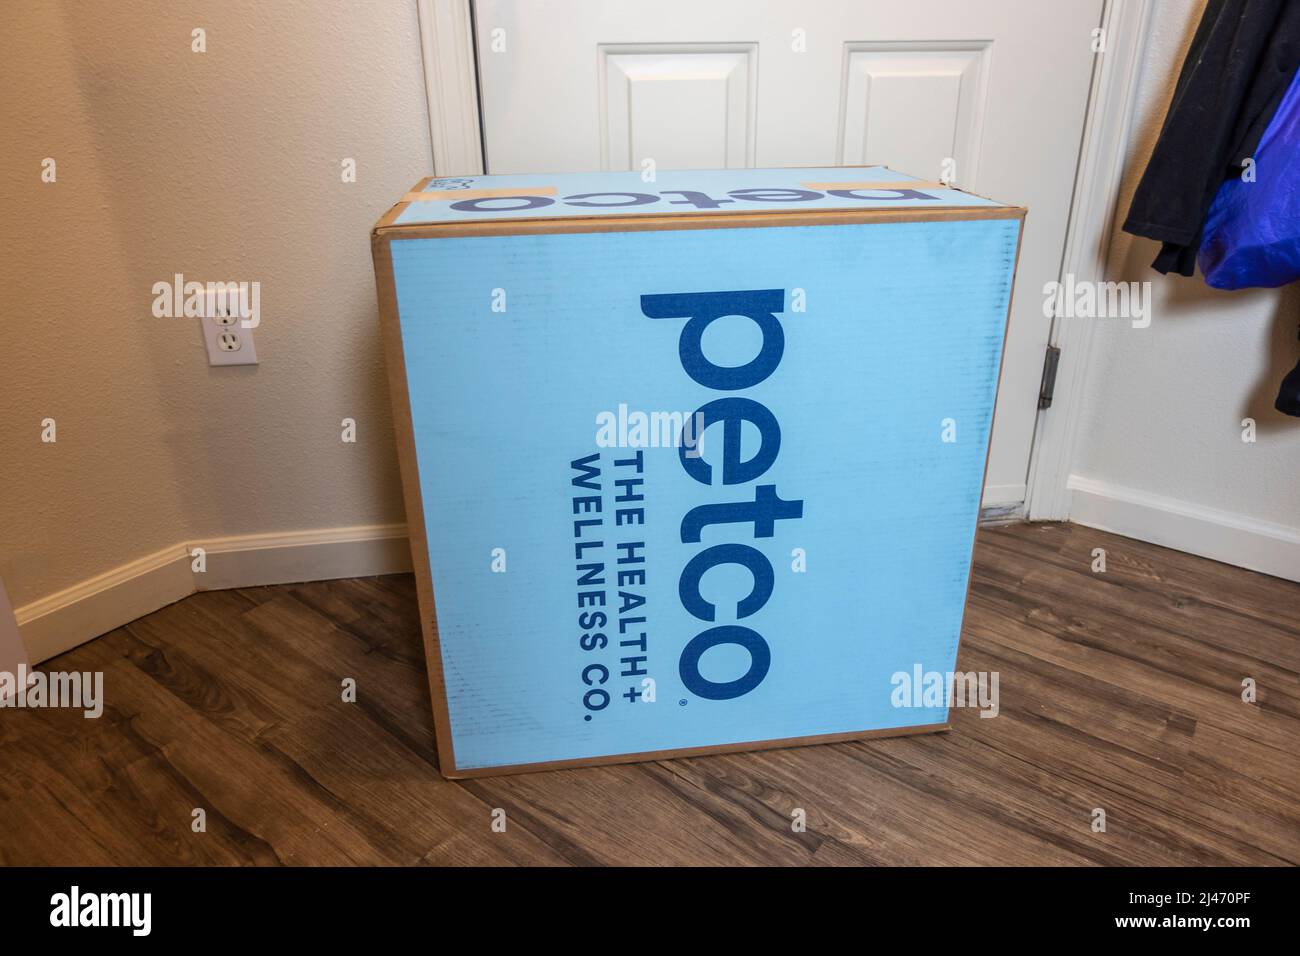 Seattle, WA USA - ca. April 2022: Schräge Ansicht eines großen Lieferpakets aus dem Jahr Petco.com in der Eingangstür eines Hauses. Stockfoto